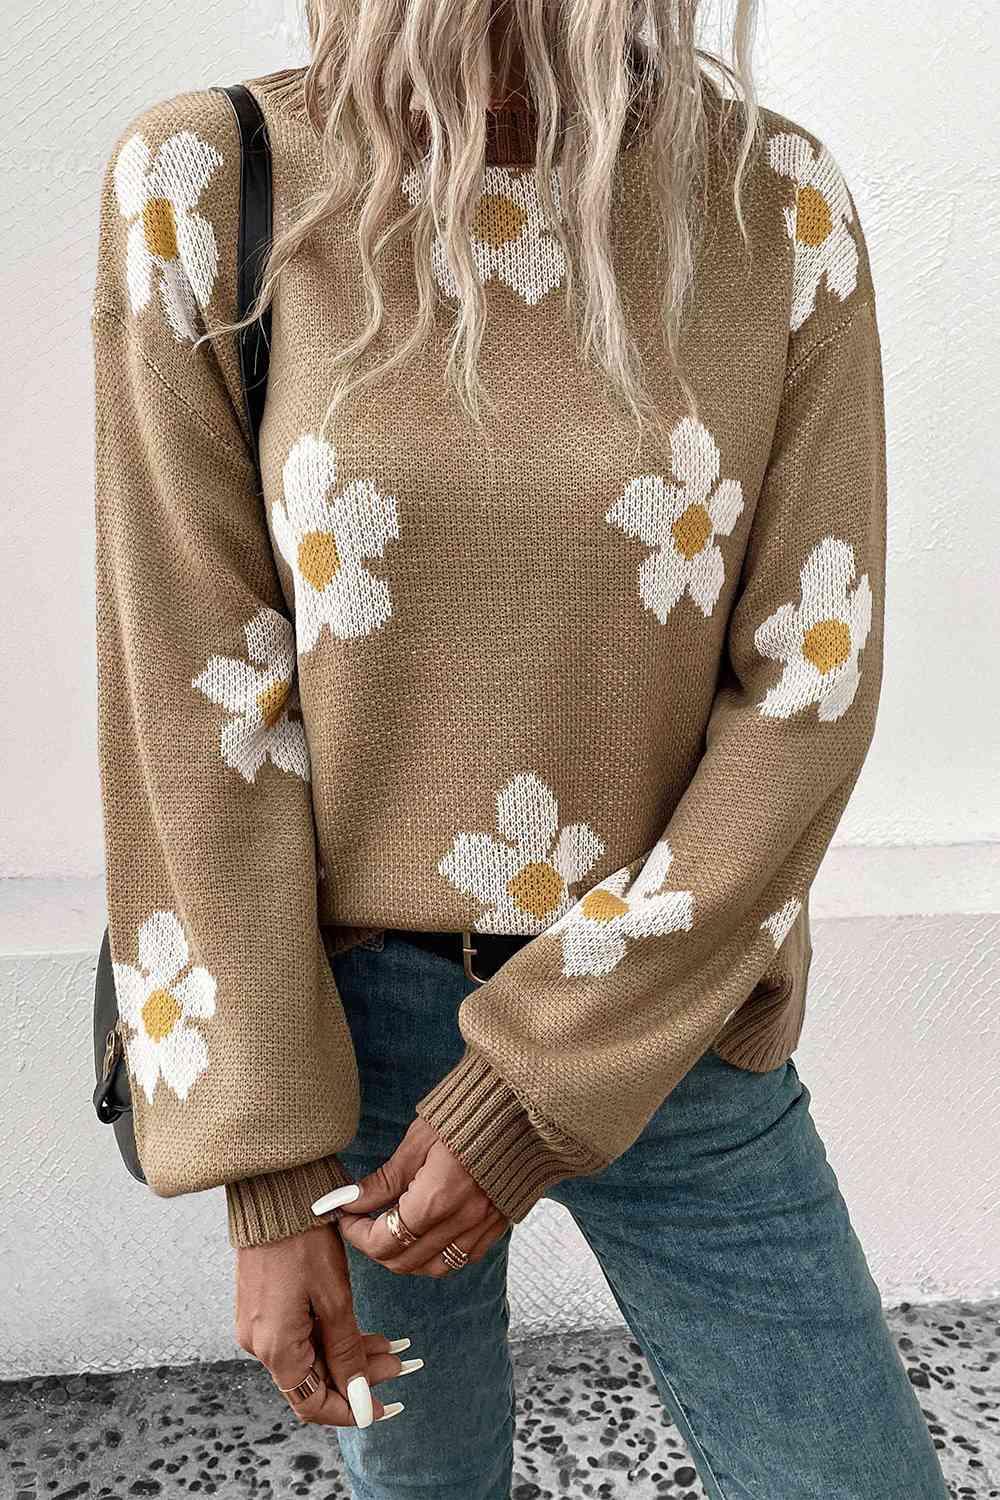 Floral Dropped Shoulder Sweater - Vesteeto